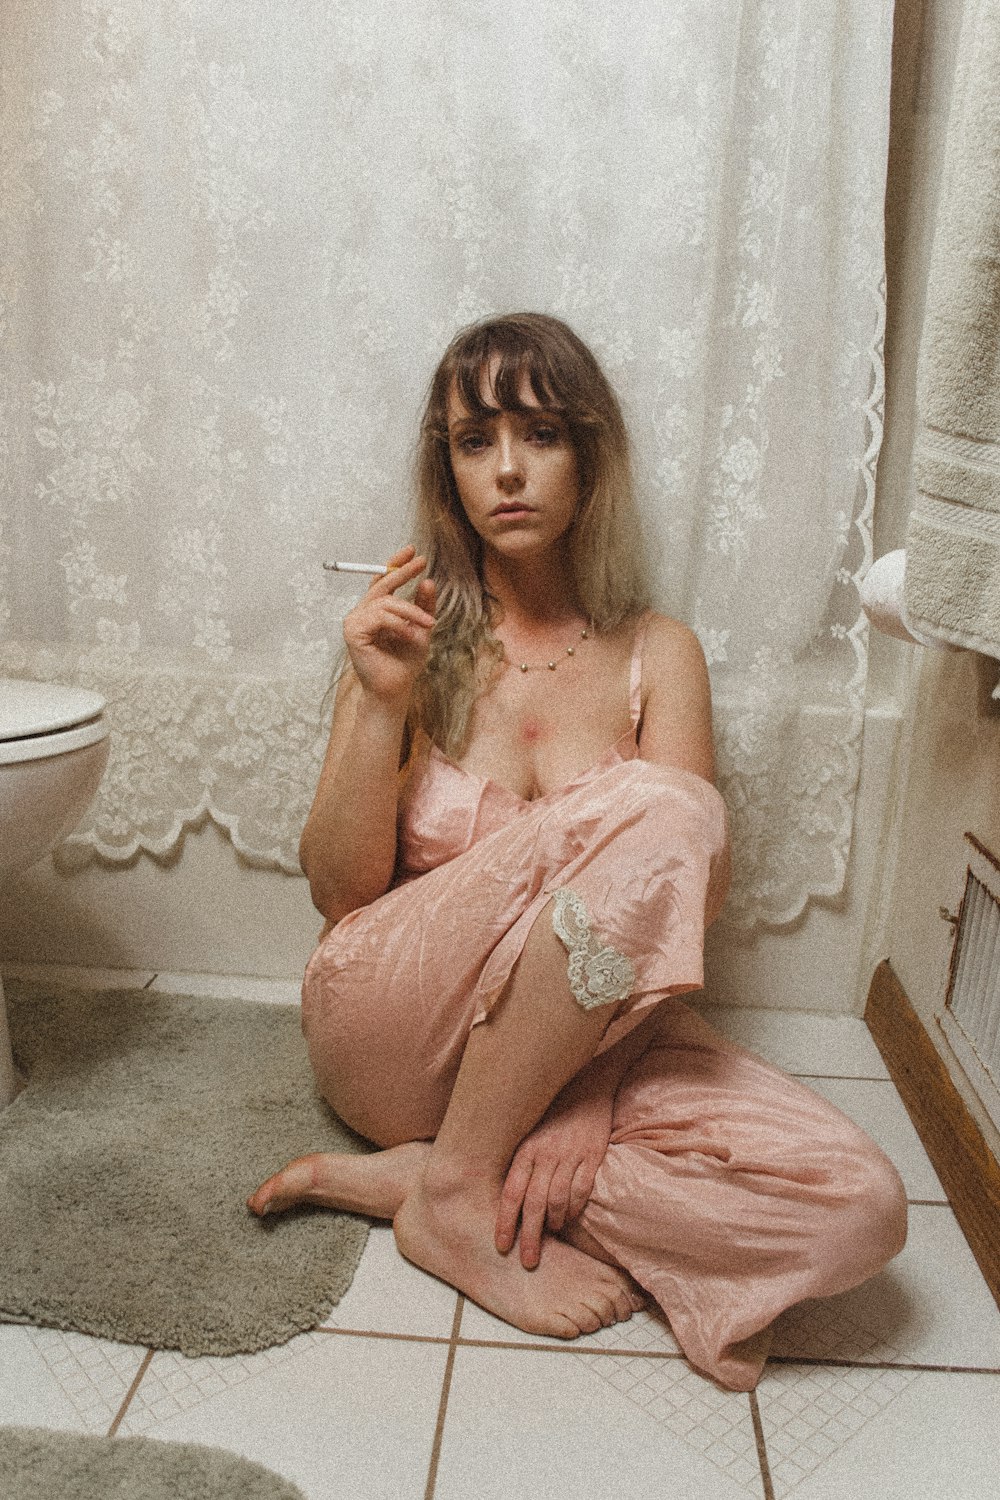 浴室の中で喫煙するパジャマのズボンを着て座っている女性